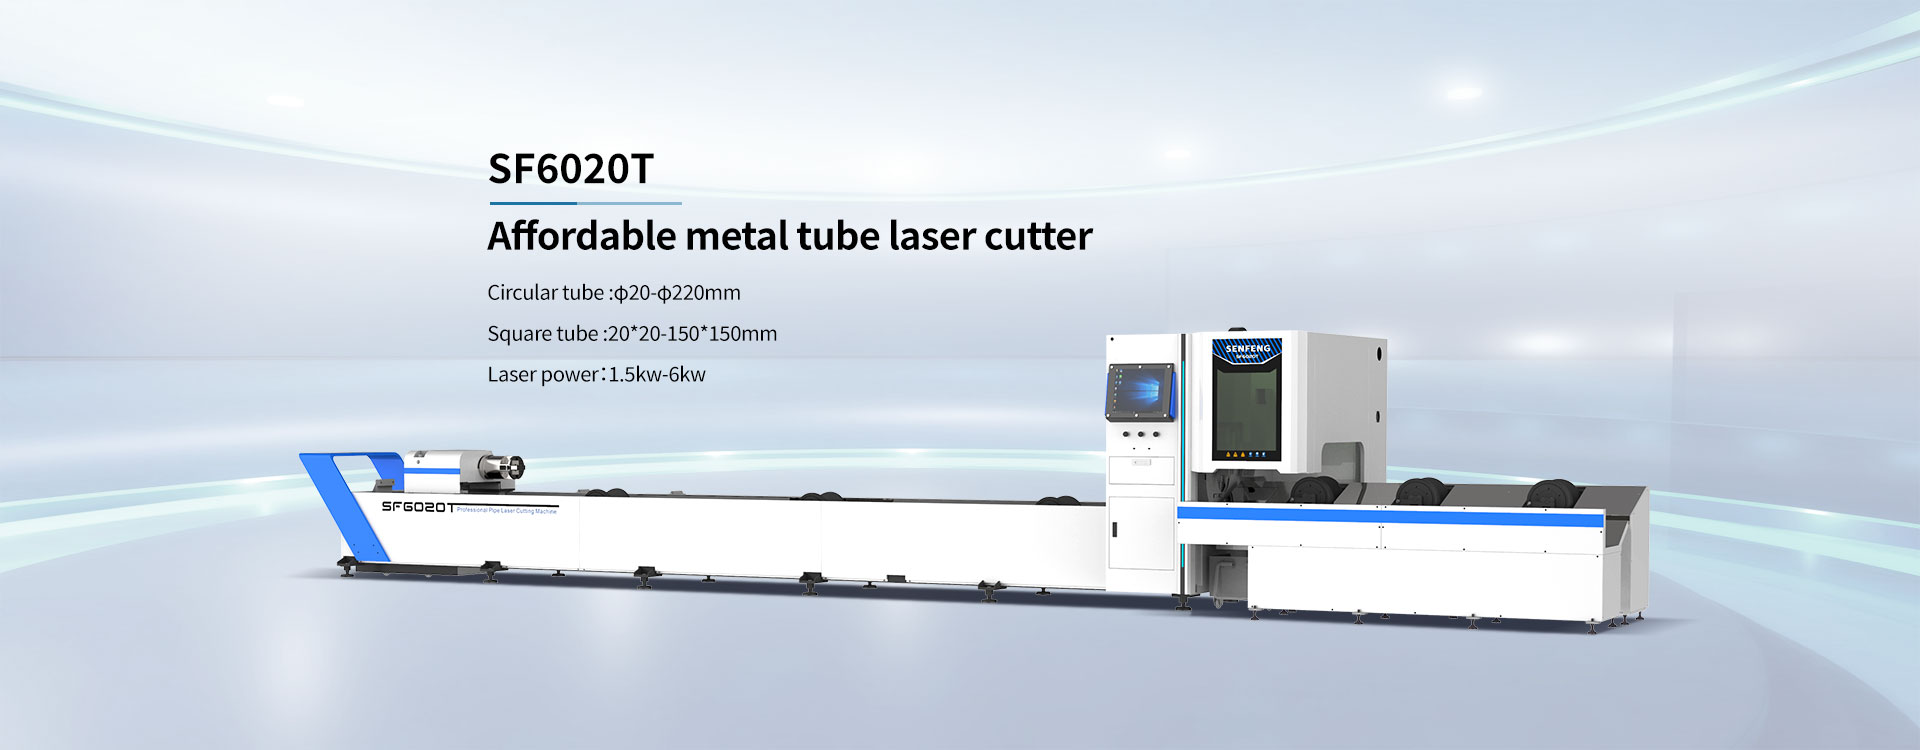 Affordable metal tube laser cutter